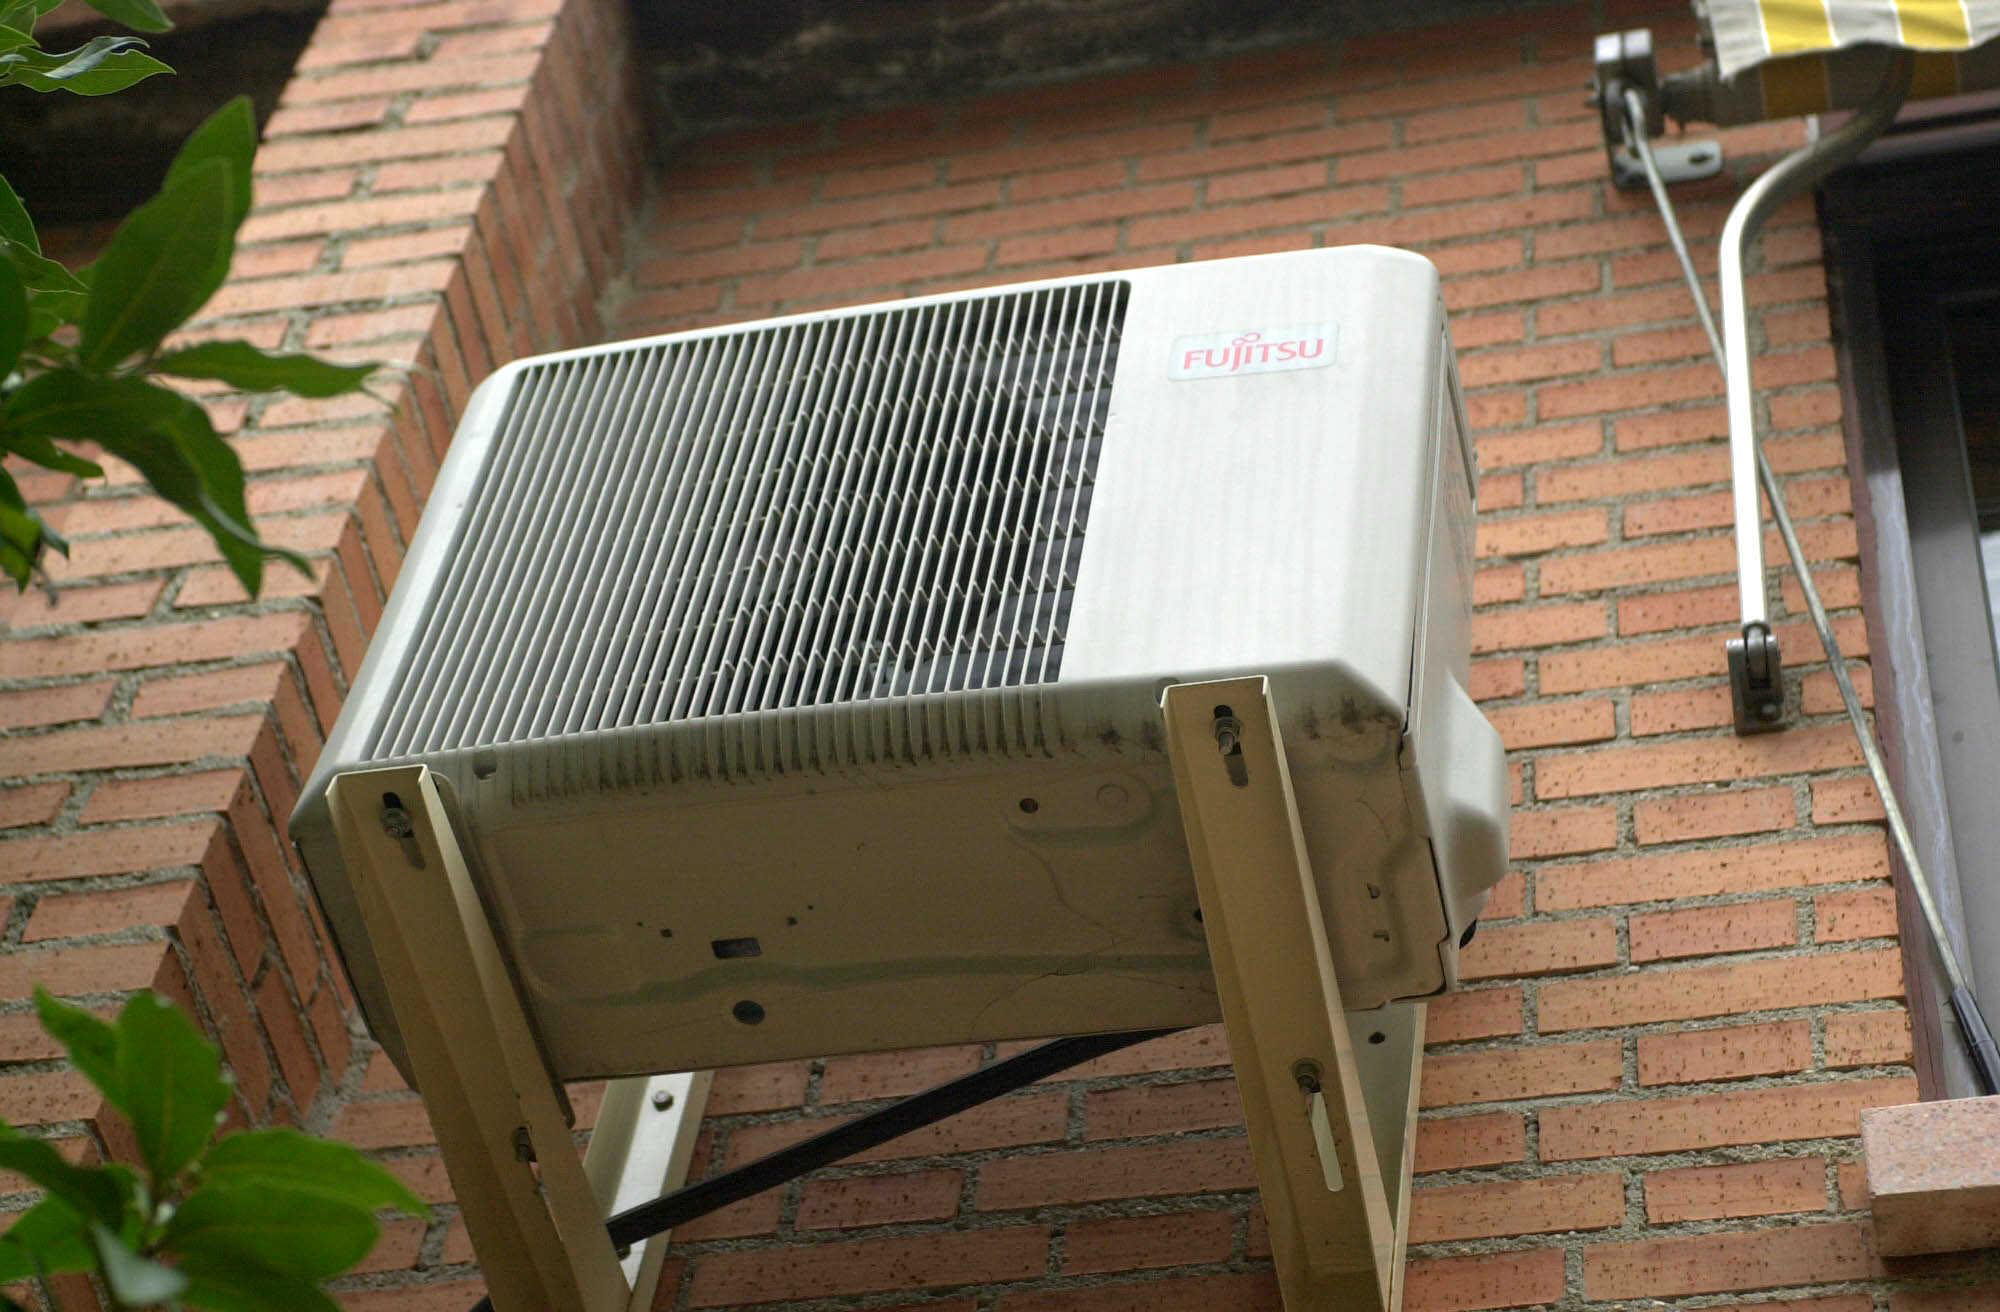 Aparato de aire acondicionado en el muro de una vivienda. EFE/Archivo